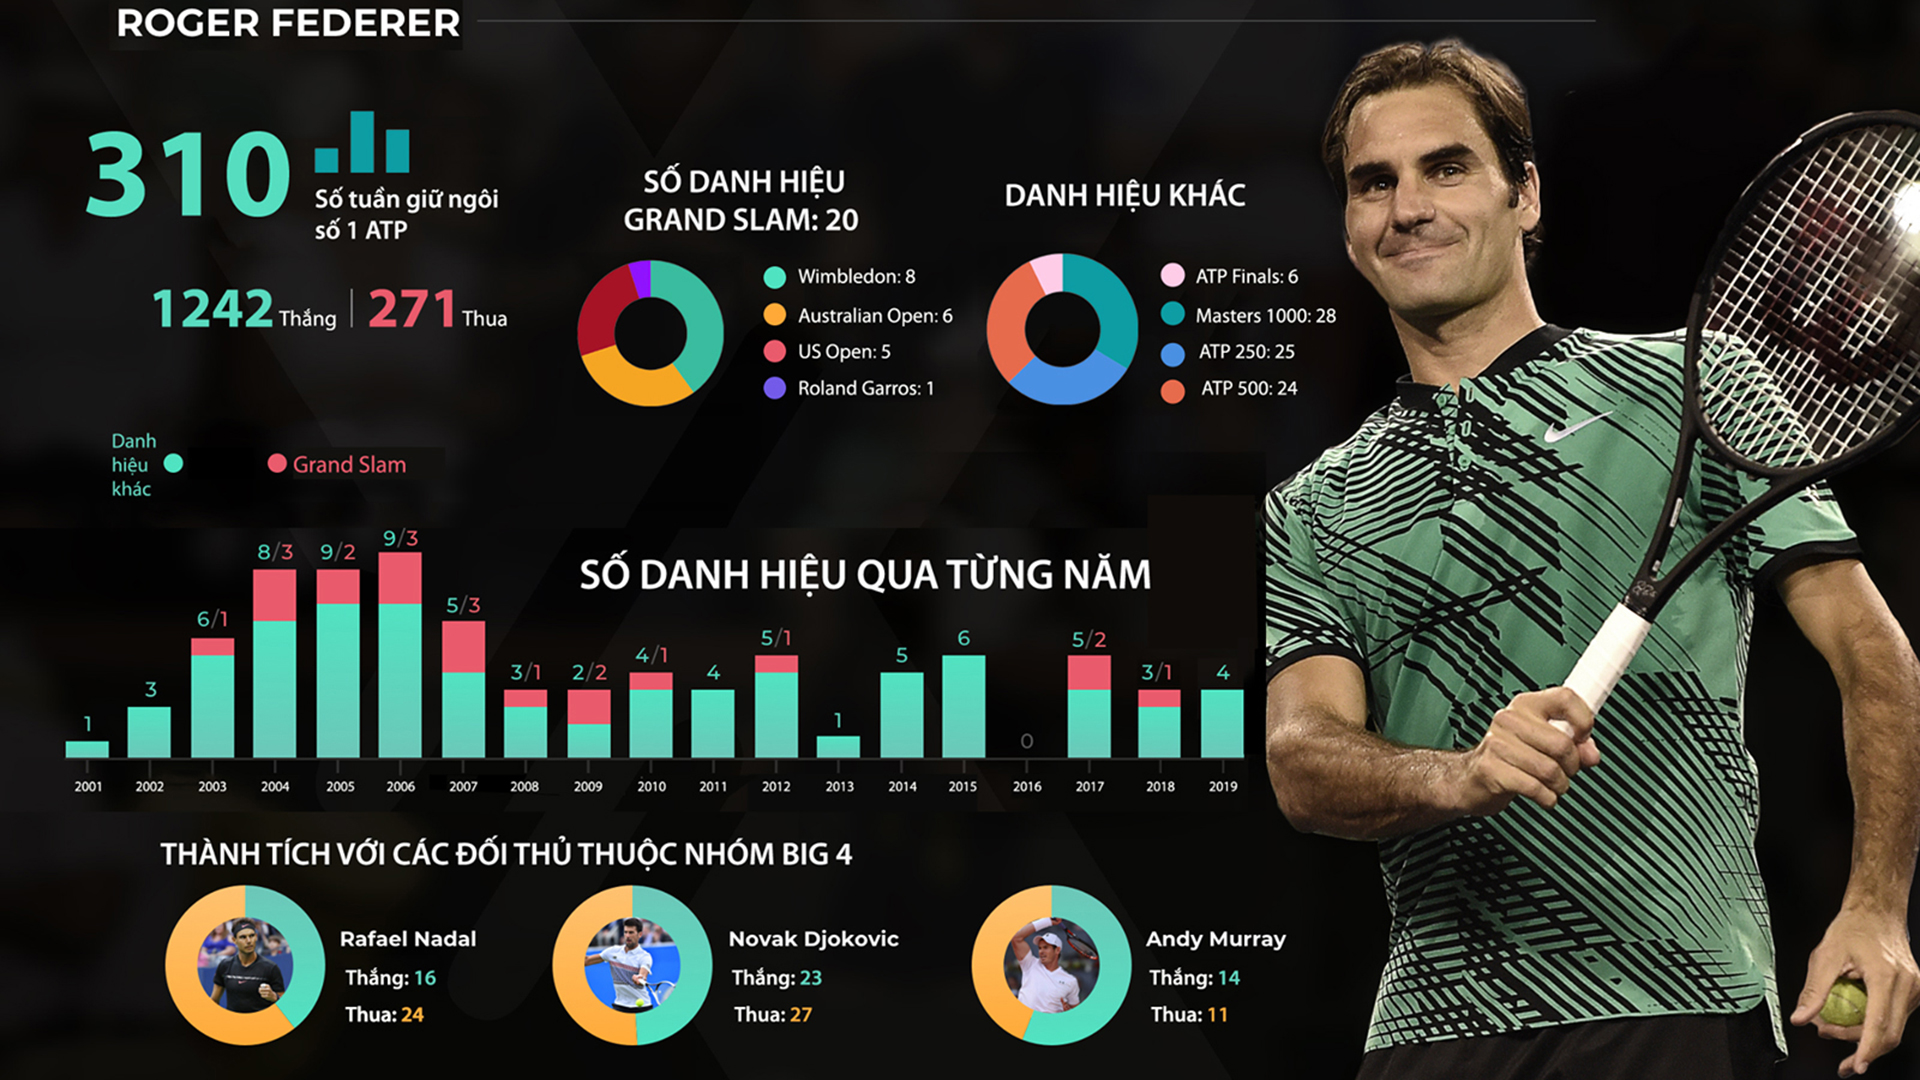 Federer tuổi 39 vẫn ôm mộng bá vương trên đỉnh cao Grand Slam - 10